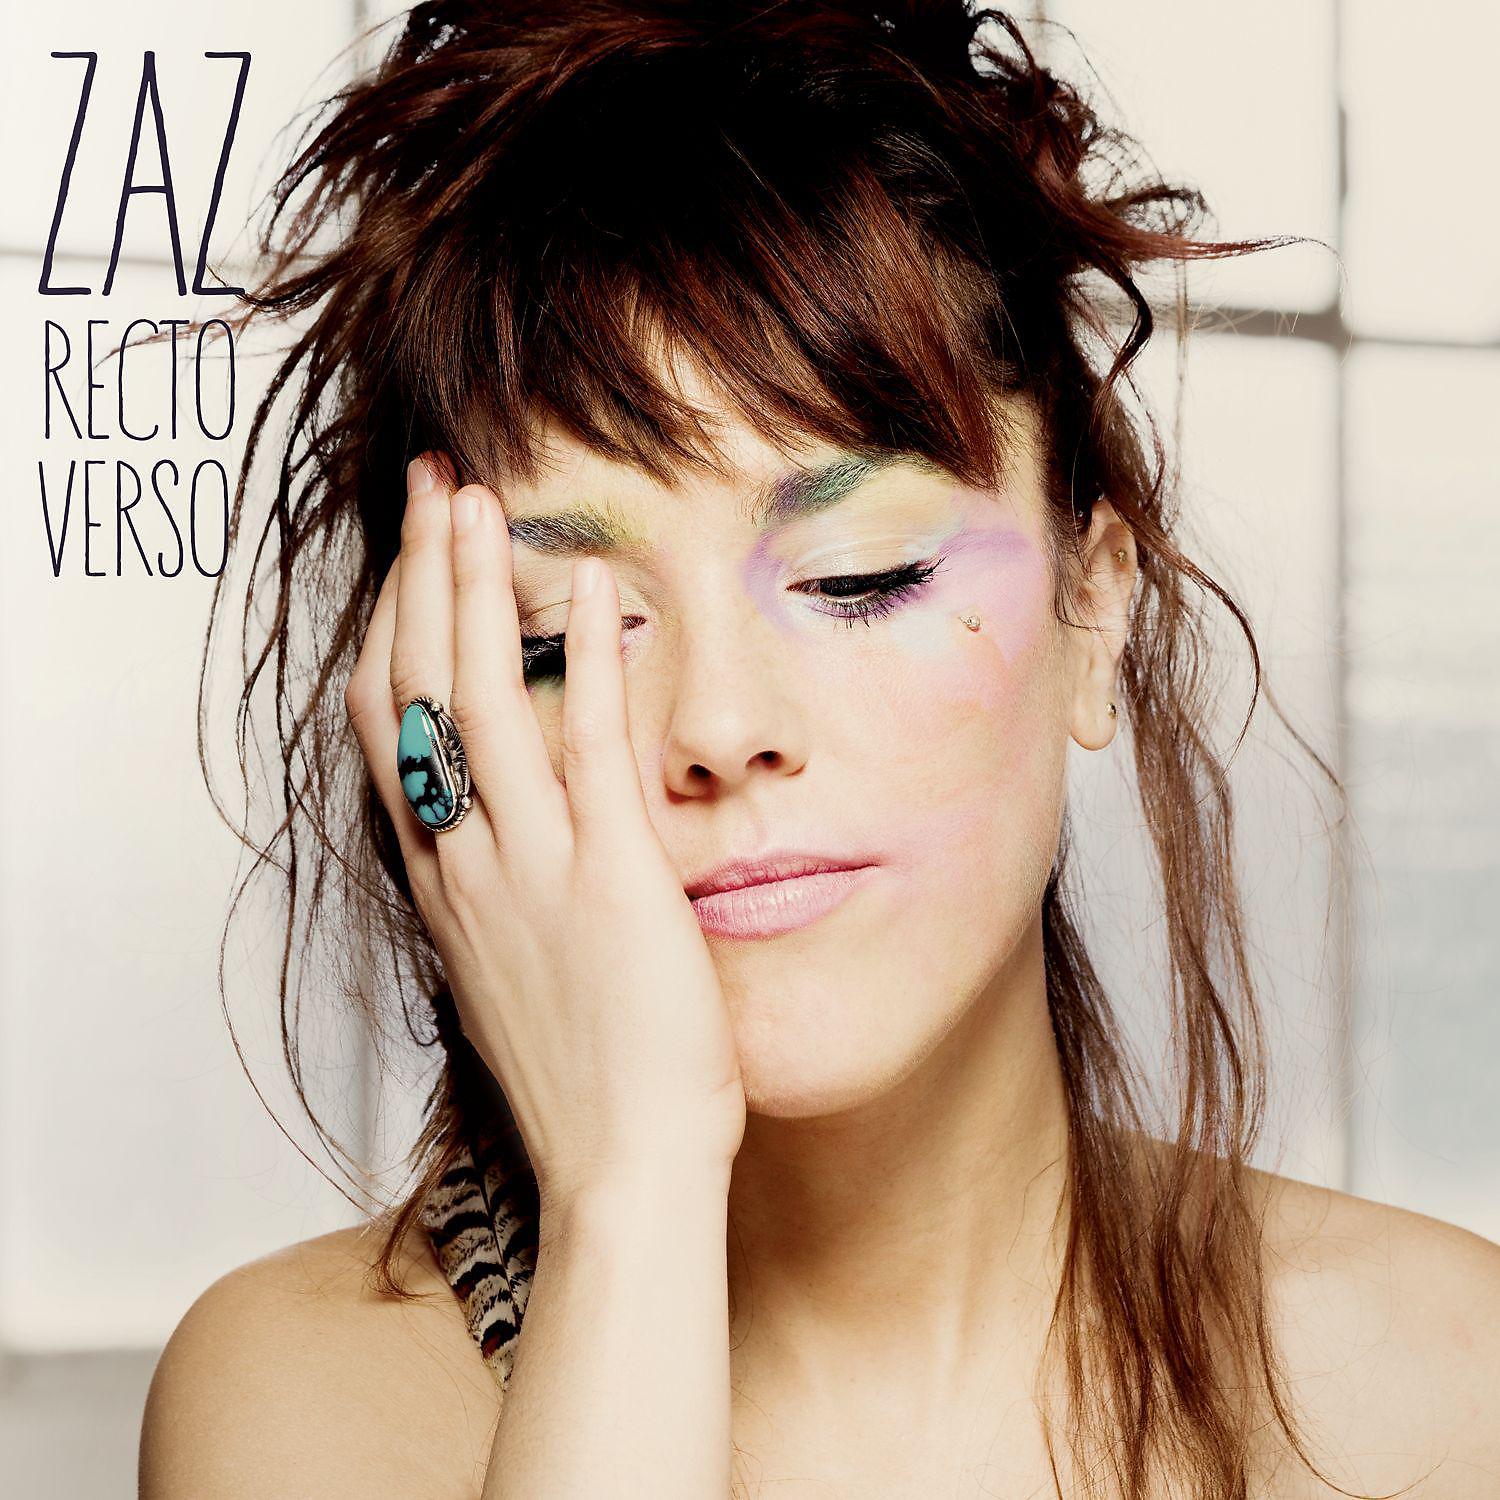 Французская певица на улице. ZAZ певица. ZAZ 4. ZAZ "recto Verso". Изабель Жеффруа ZAZ.